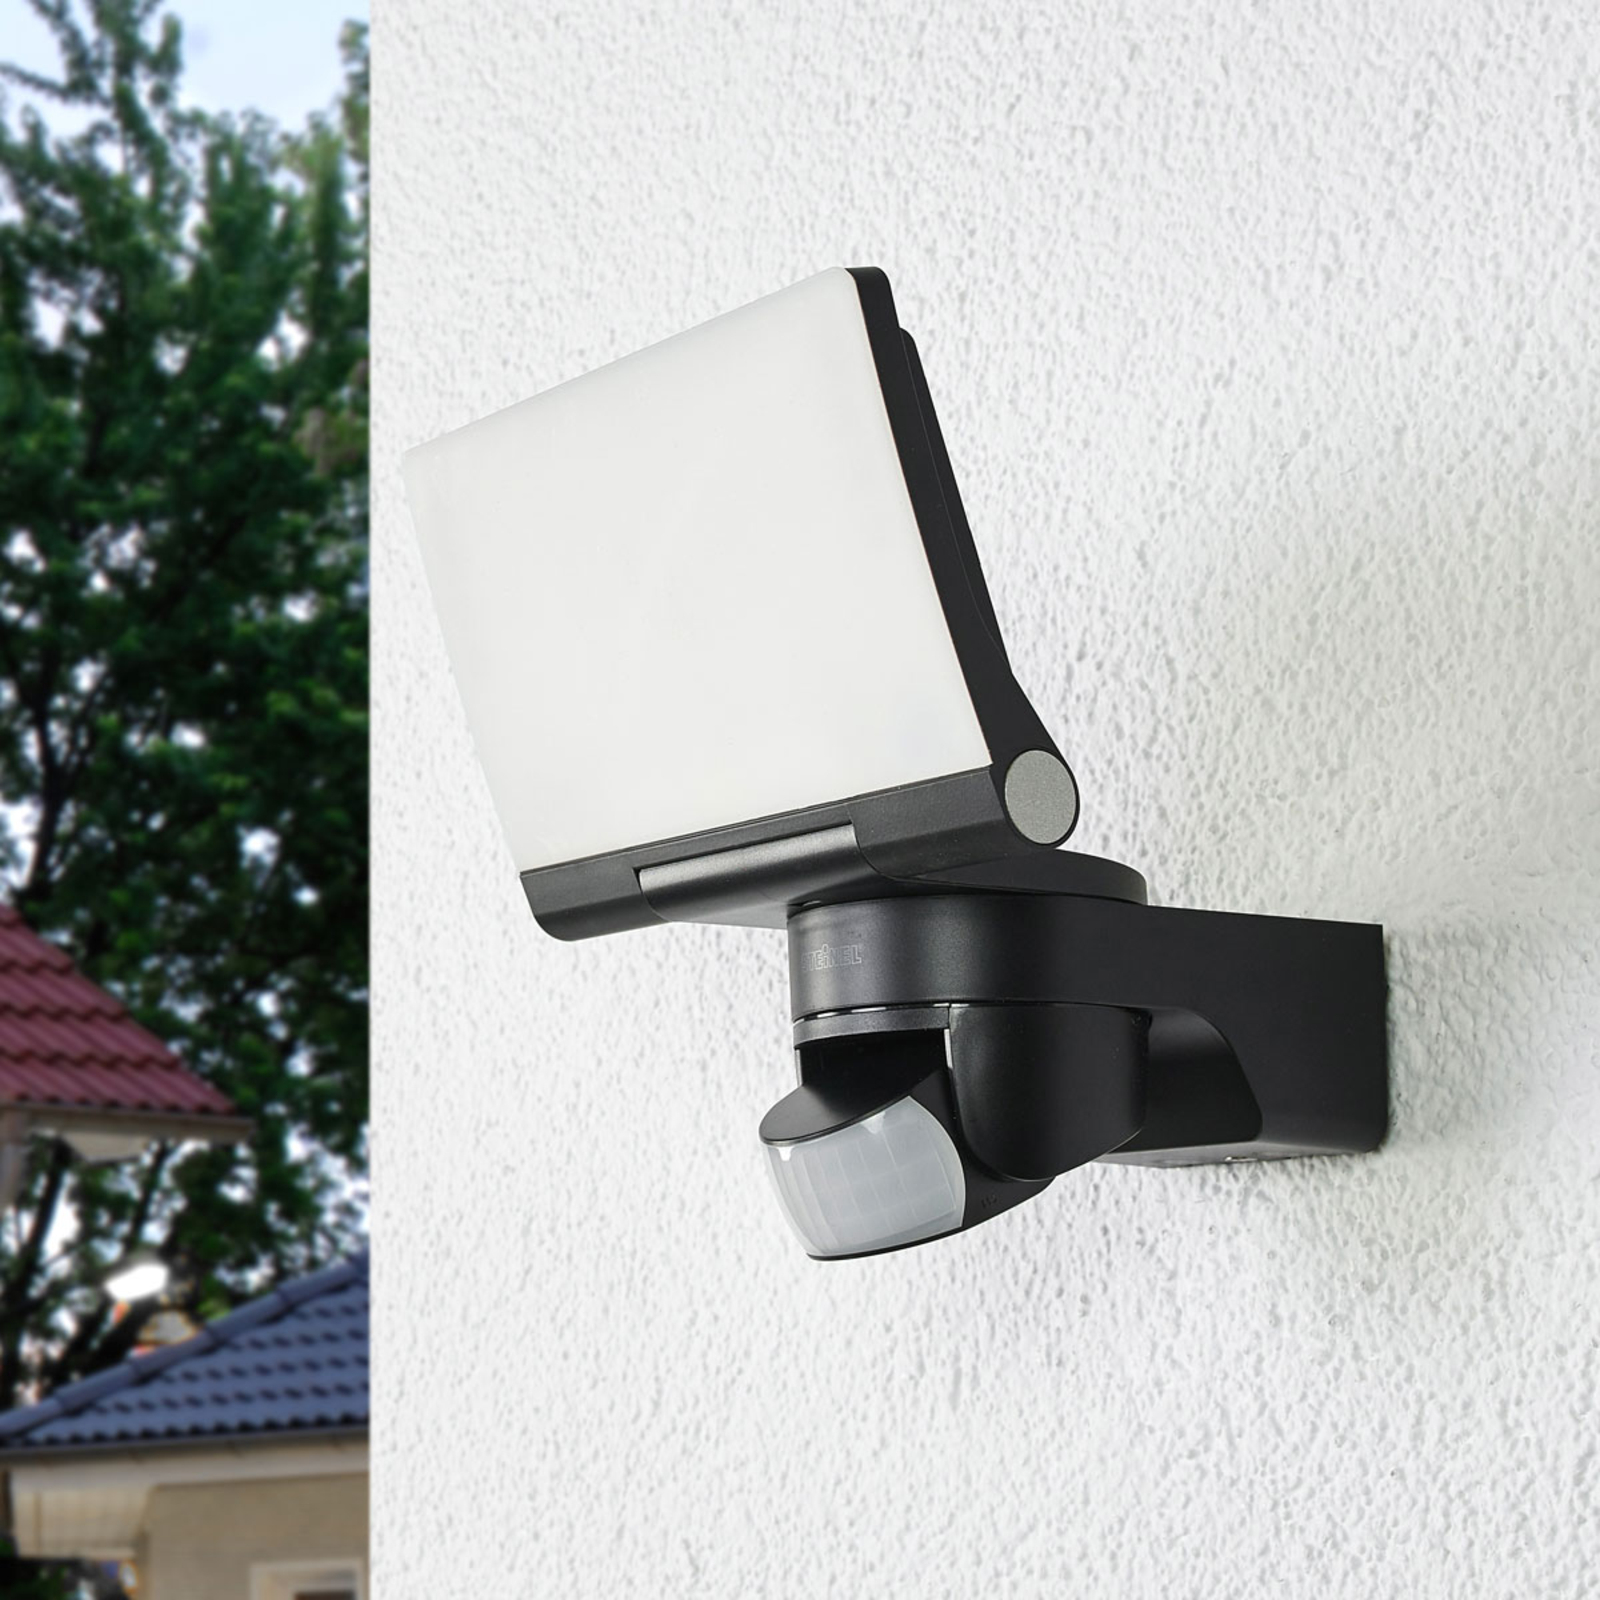 Persoon belast met sportgame Dwars zitten beproeving STEINEL XLED Home 2 S sensor outdoor spot black | Lights.co.uk